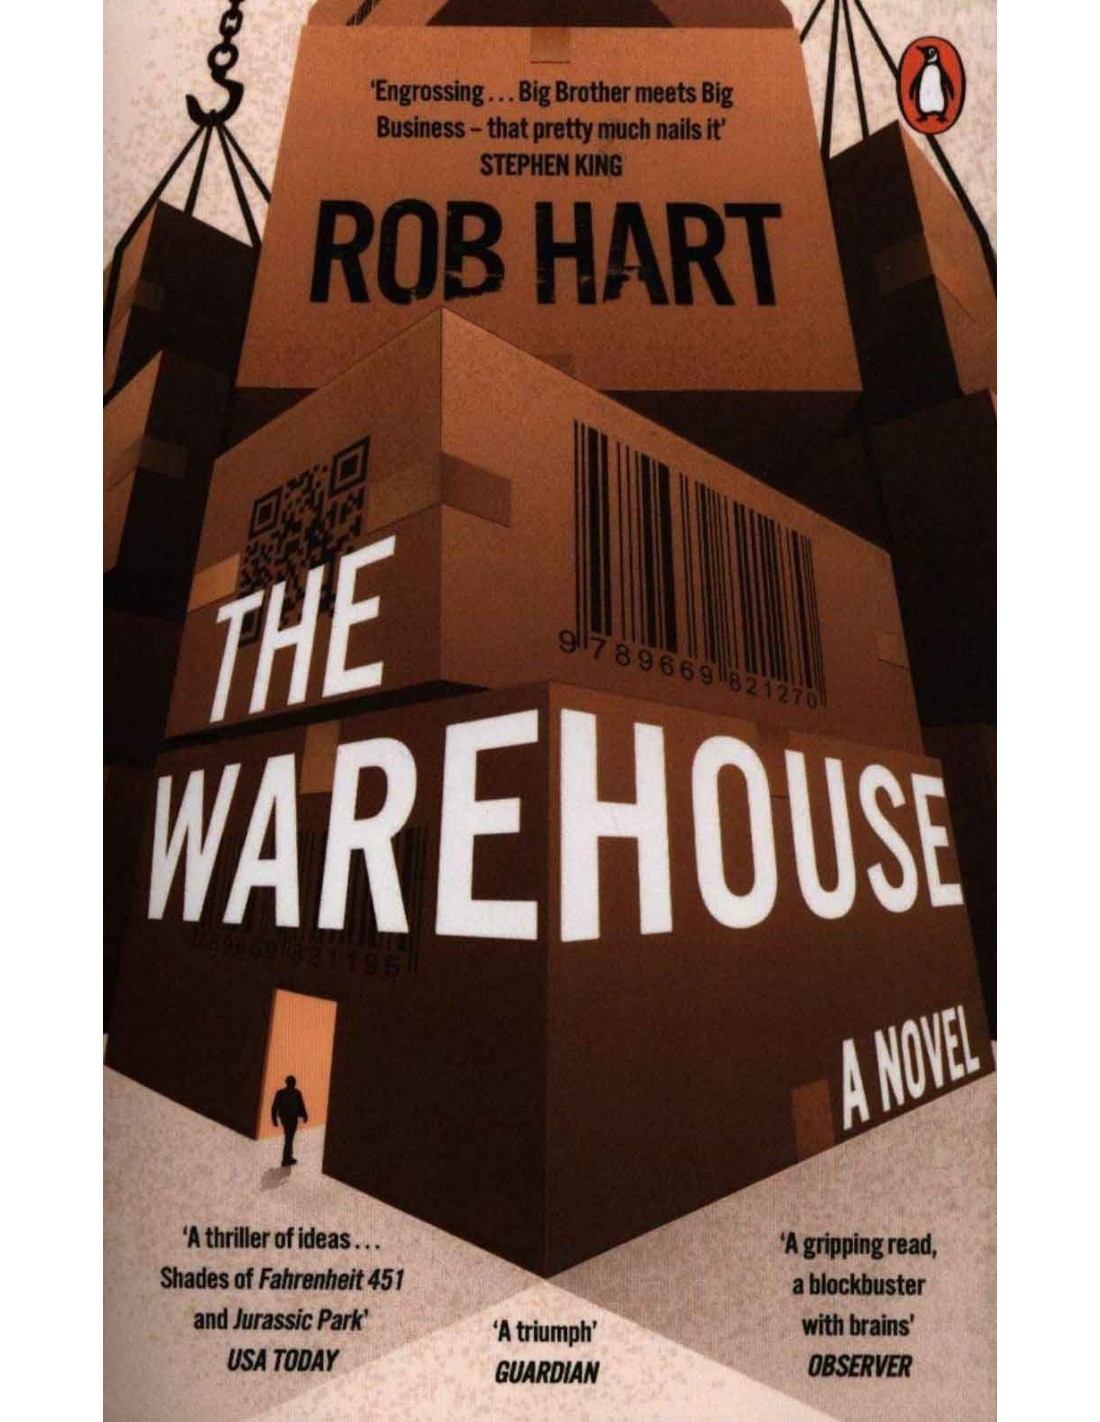 rob hart the warehouse